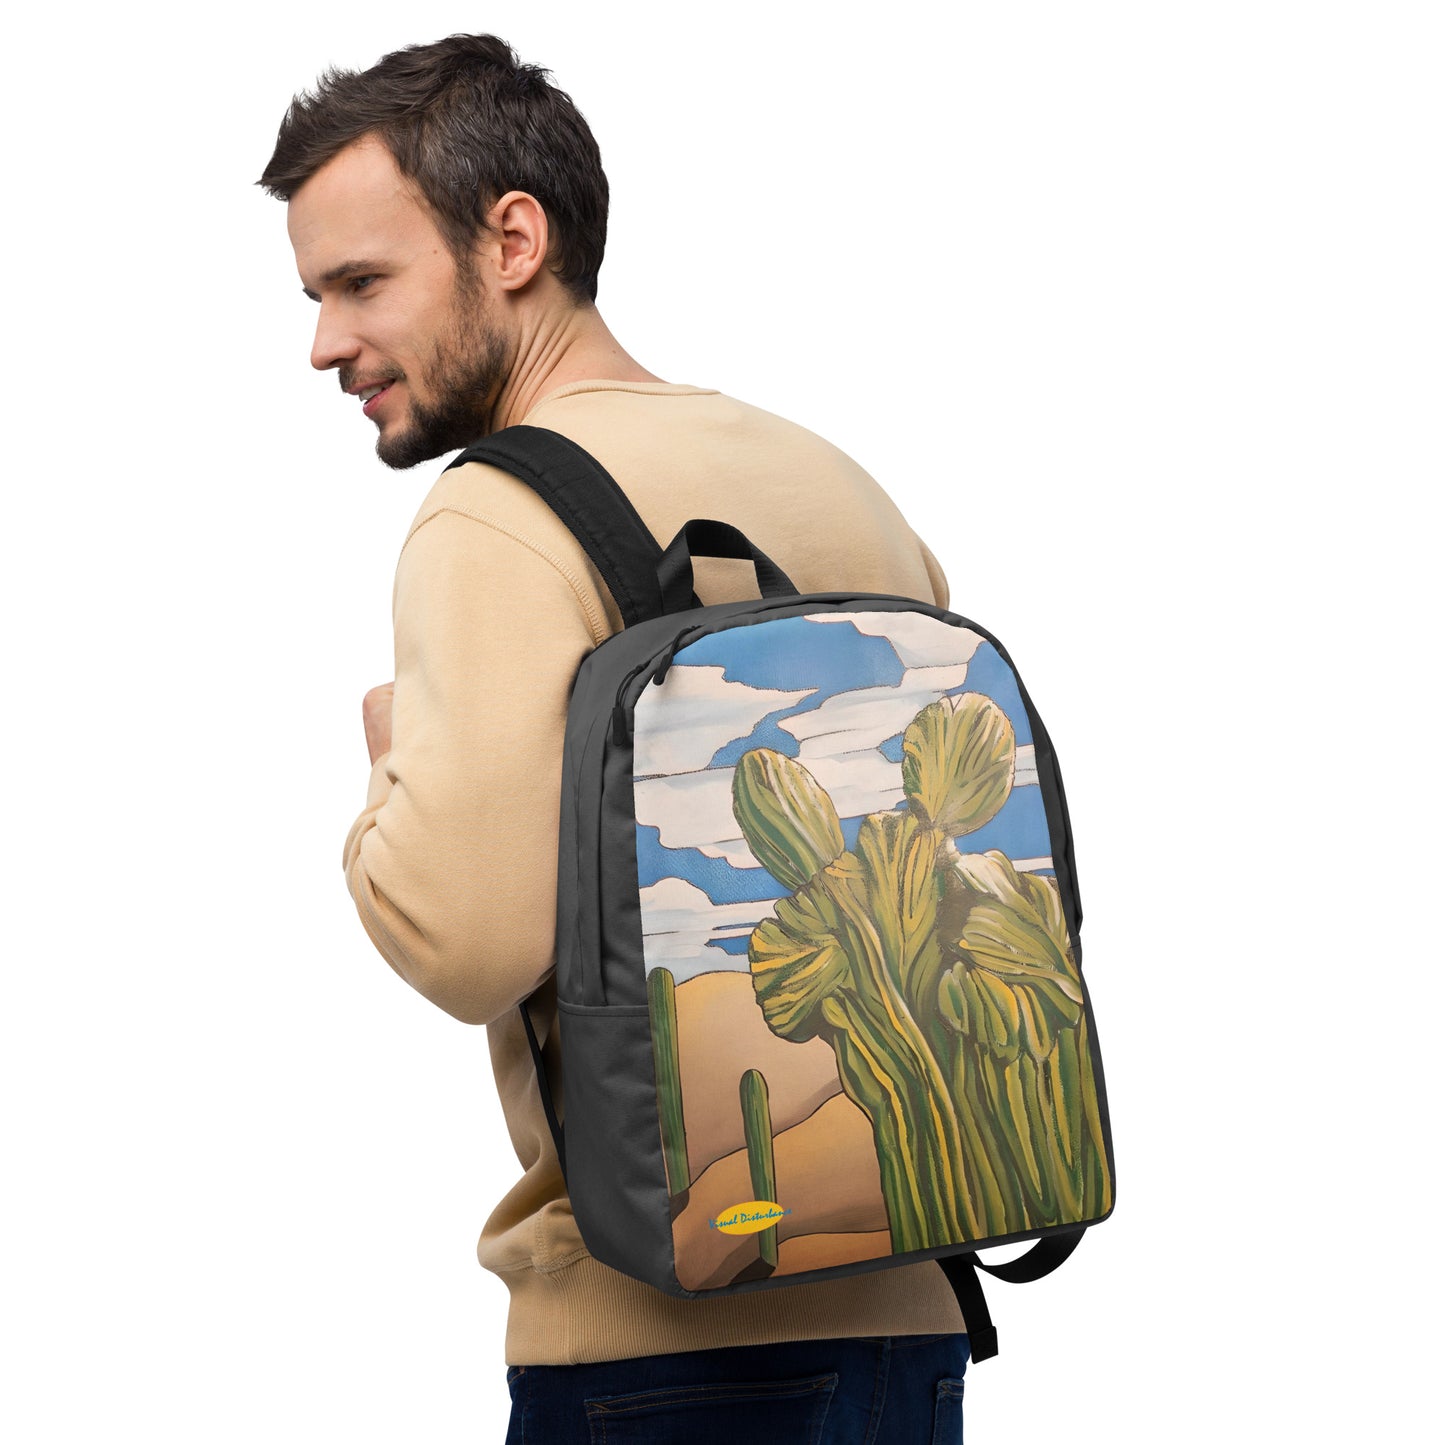 Crested Saguaro Cactus Minimalist Backpack